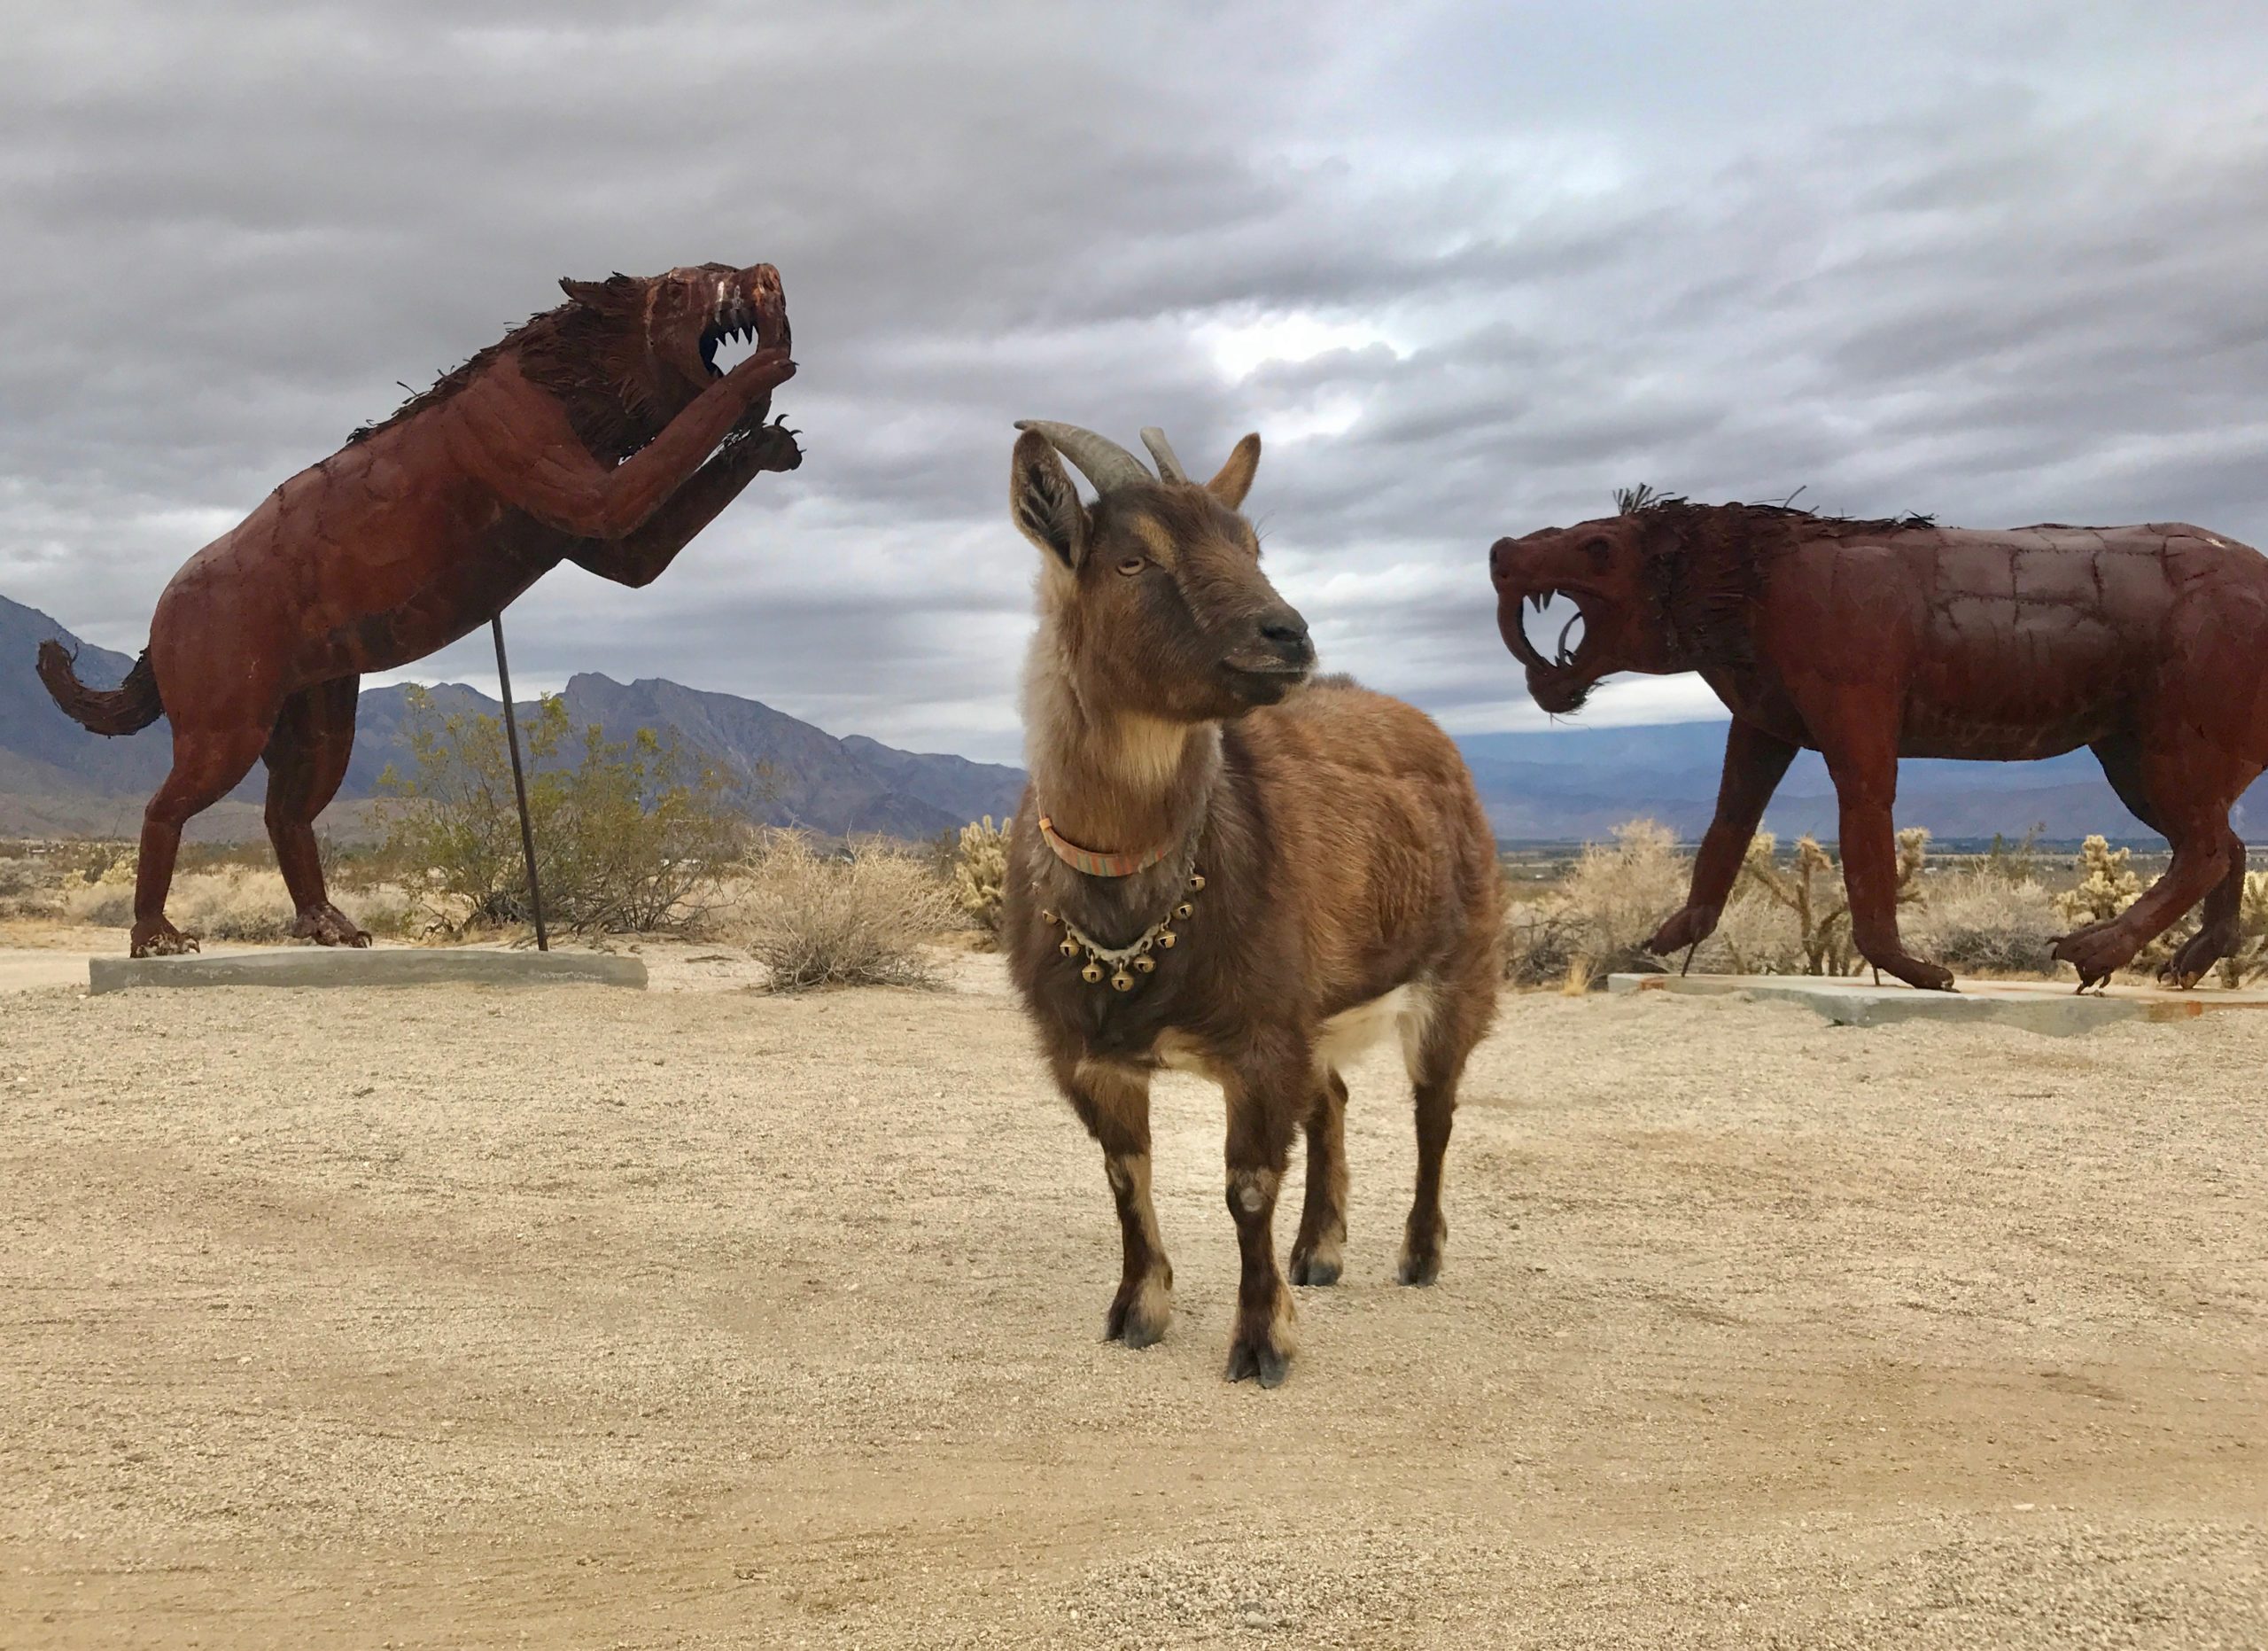 Goat standing in between two lion metal sculptures in desert